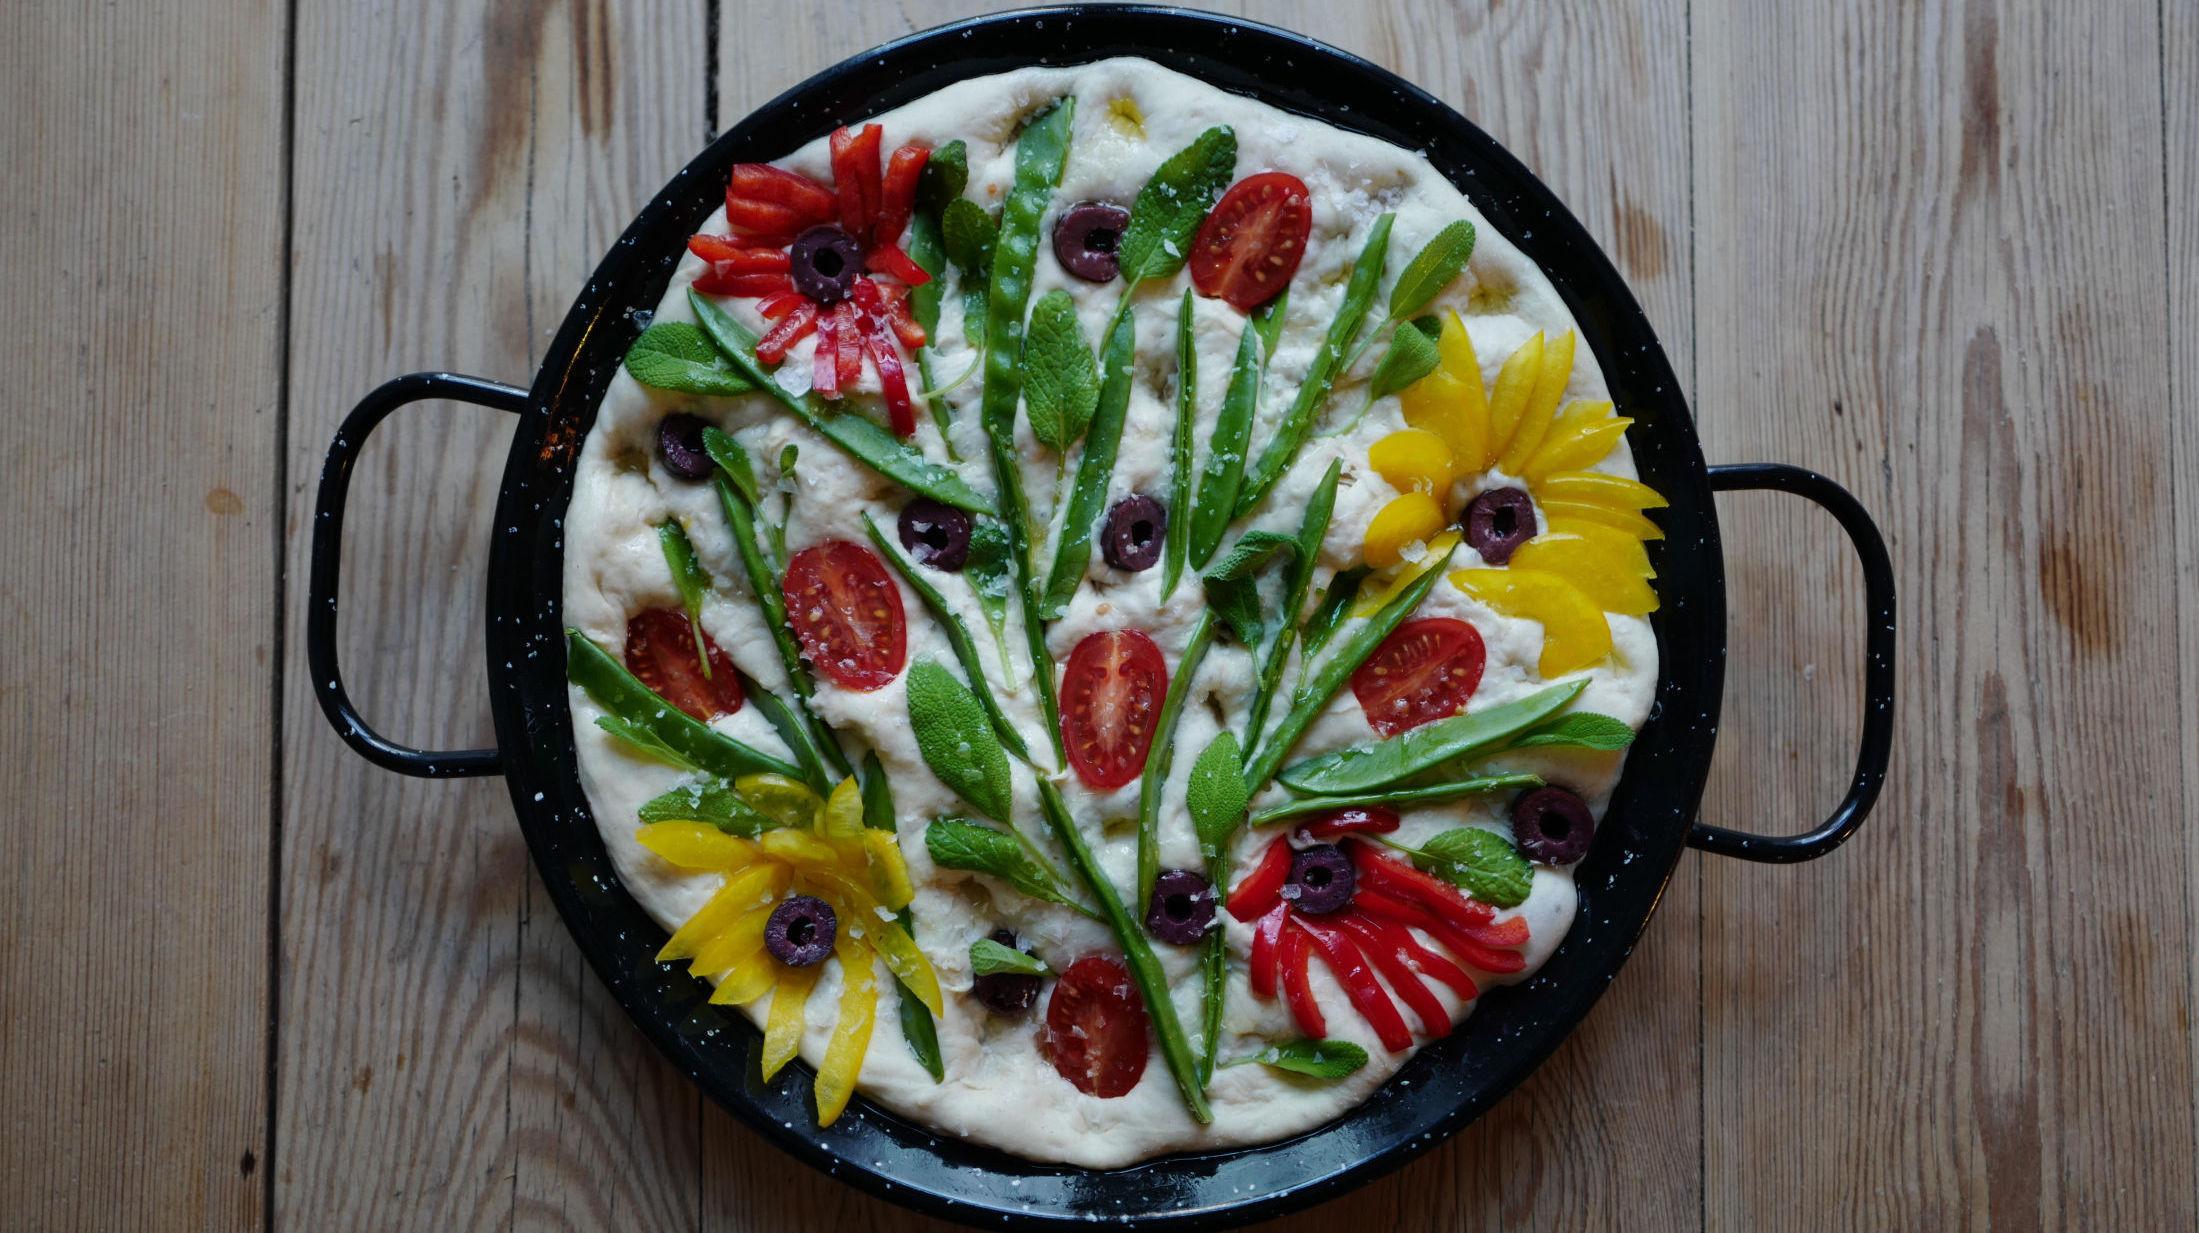 VAKKERT: Men også smakfullt. Denne blomsterfocacciaen med paprika, oliven og sukkererter er laget av matblogger og kokebokforfatter Helle Øder Valebrokk. Foto: Helle Øder Valebrokk